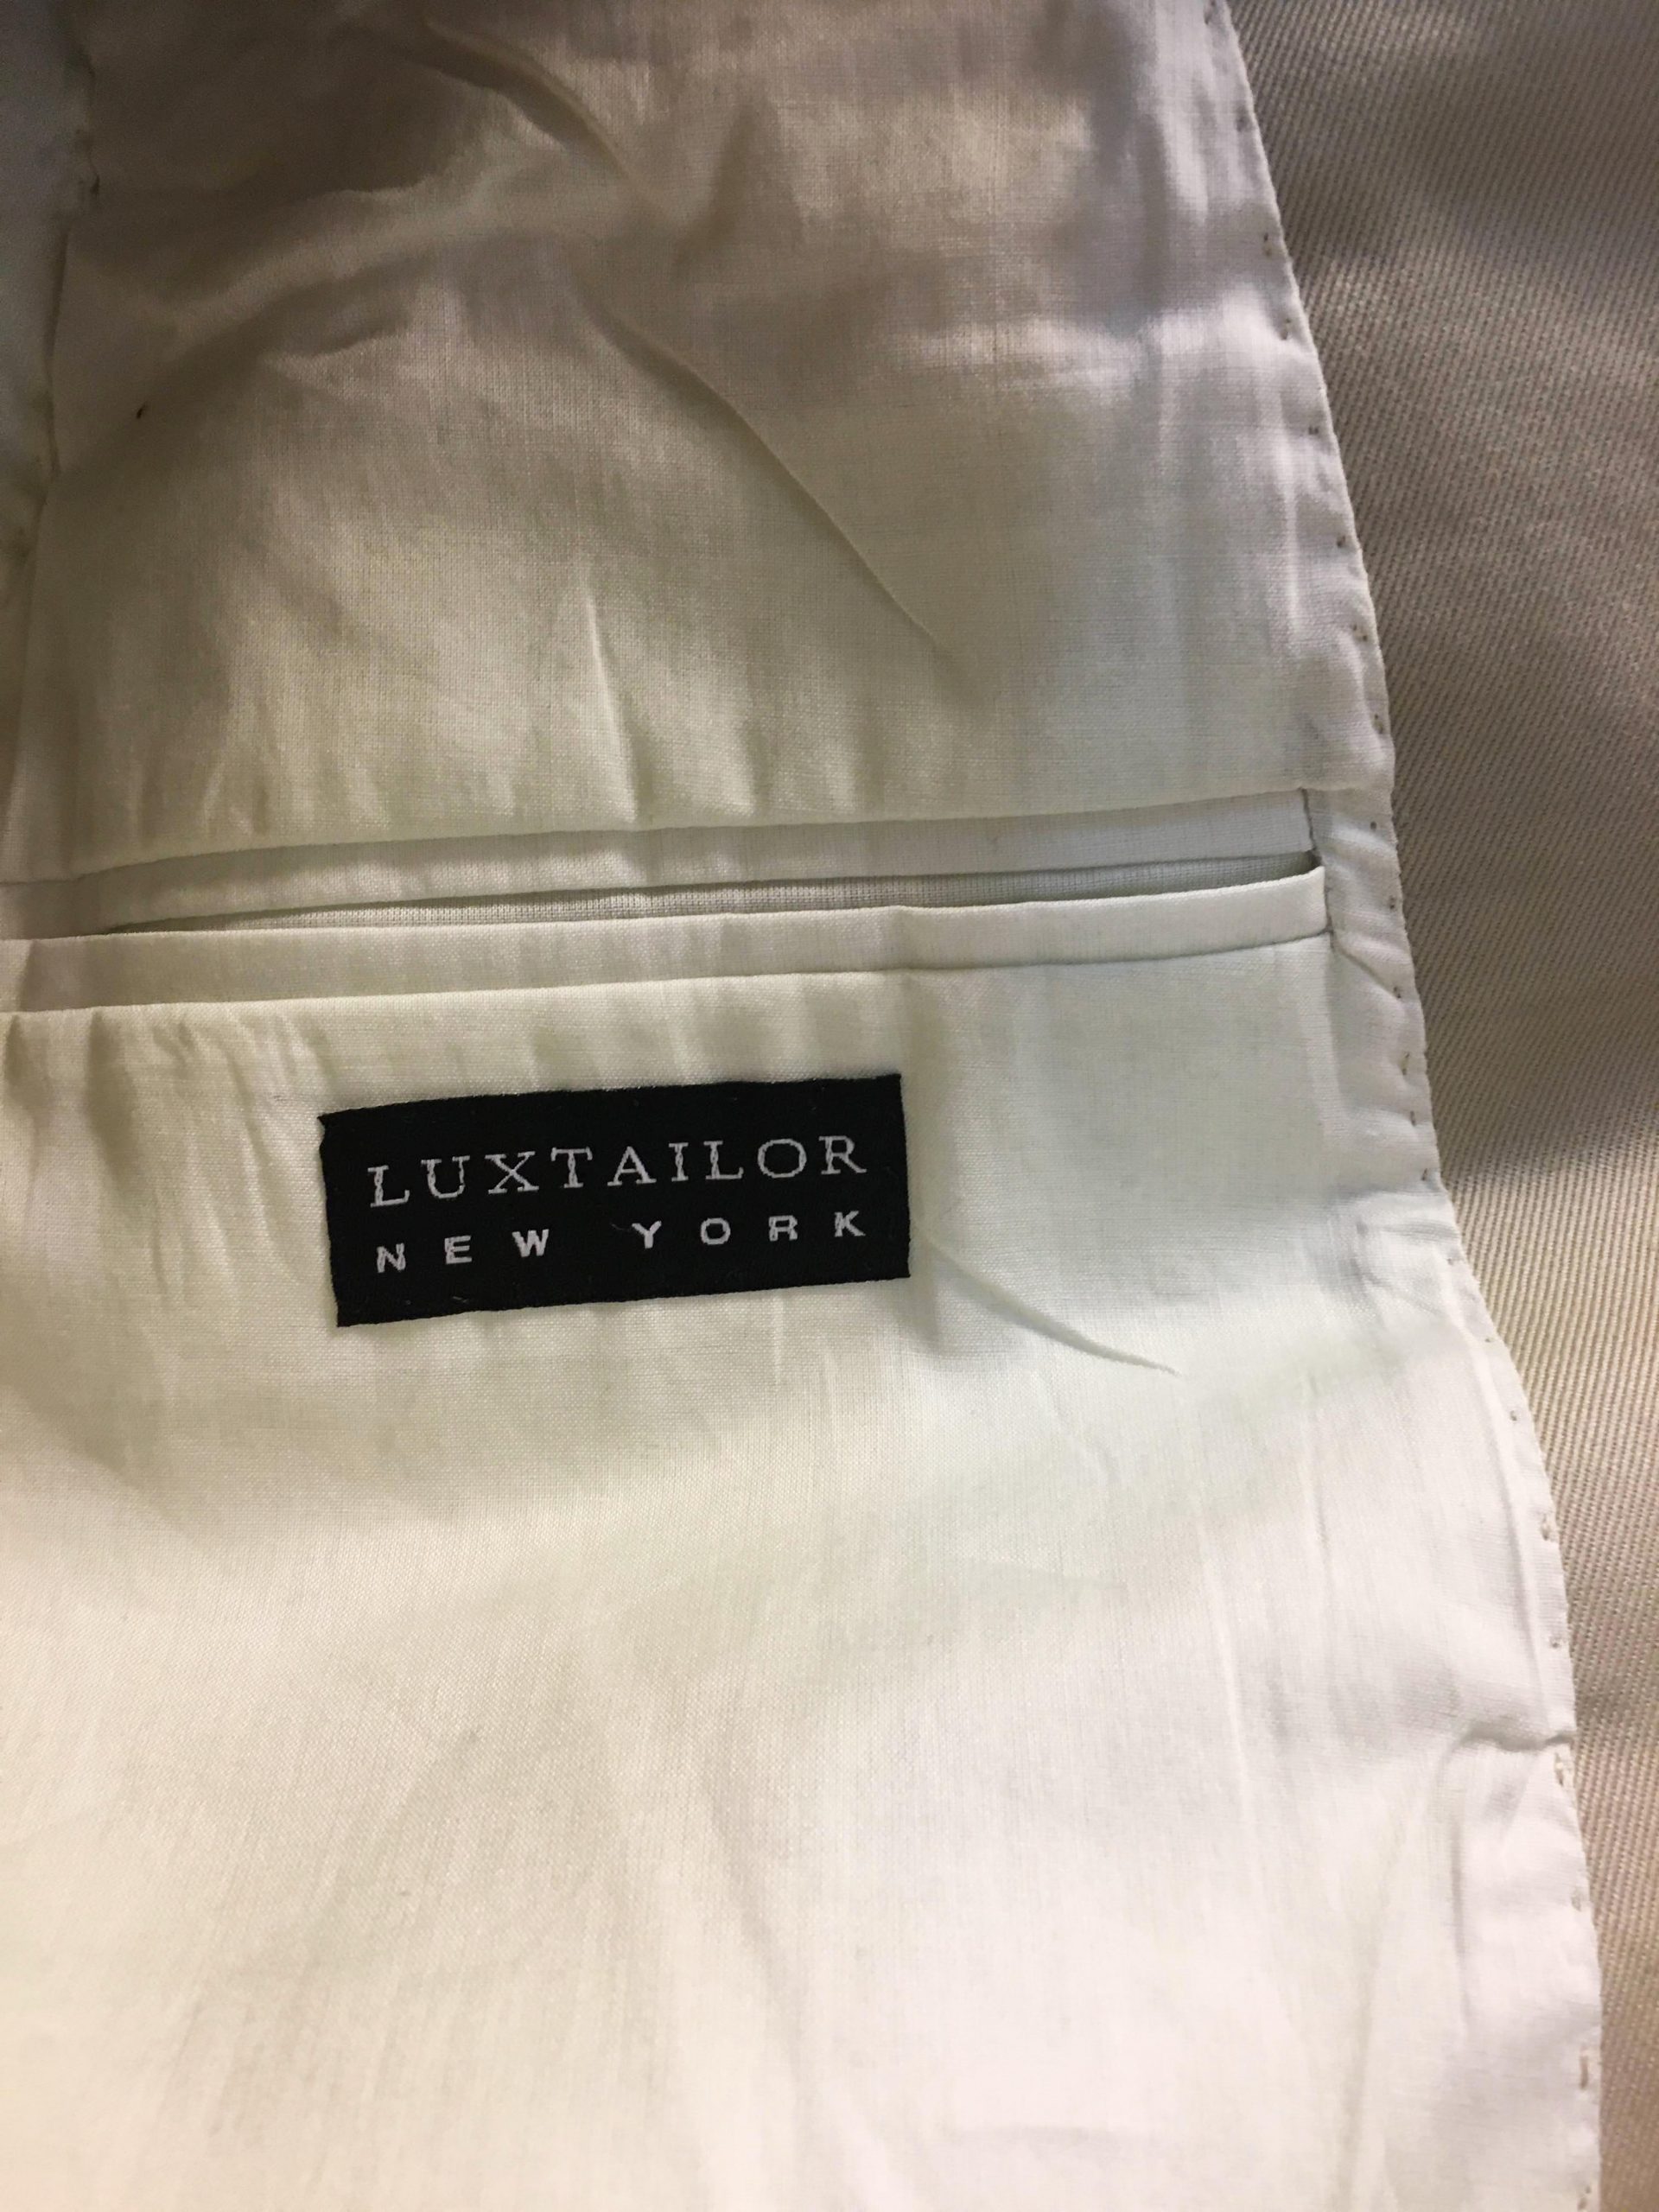 Luxtailor